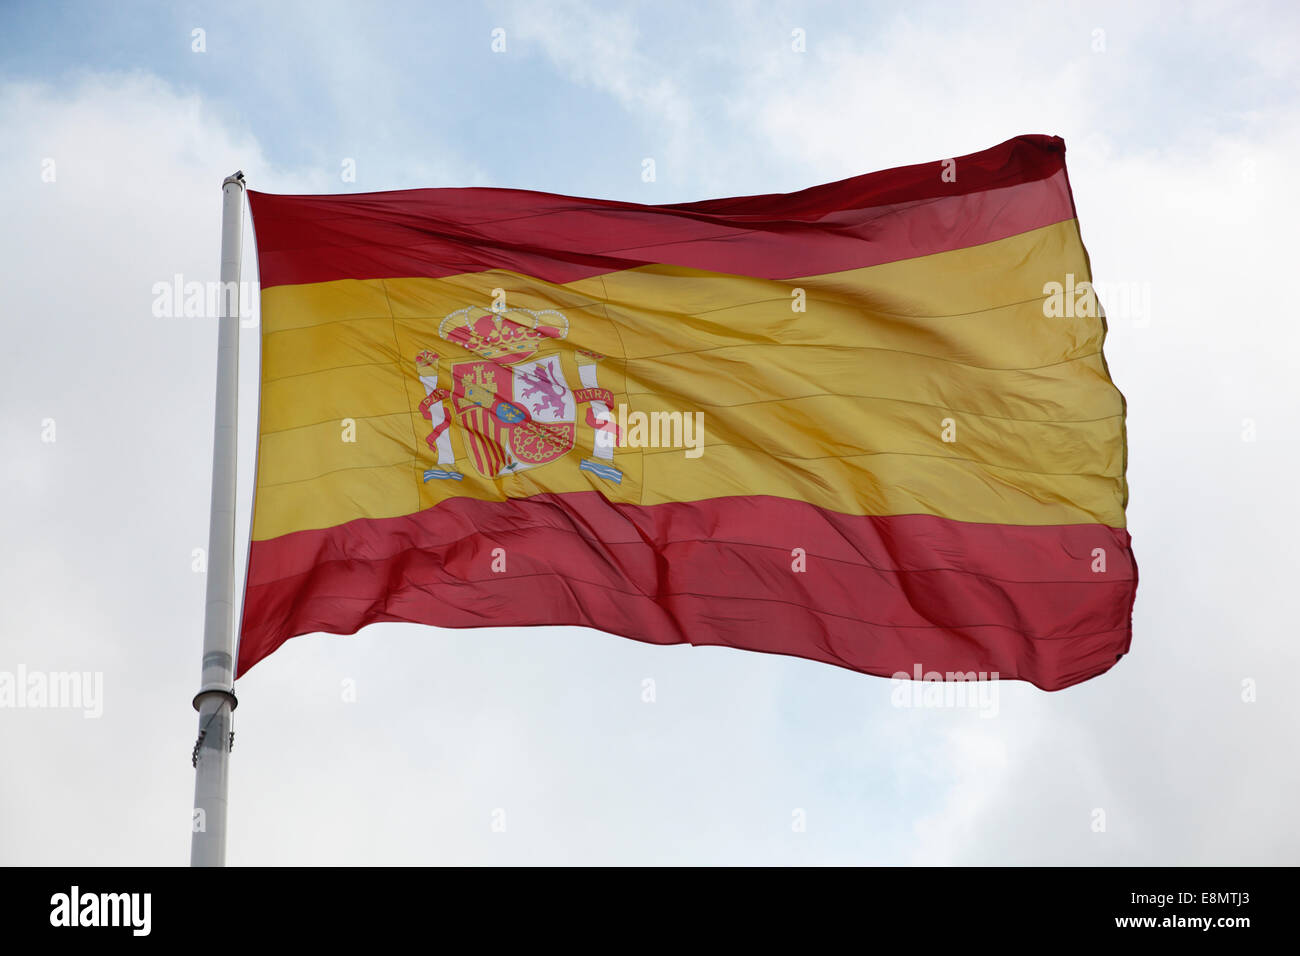 Bandiera spagnola con insegne regali. Foto Stock